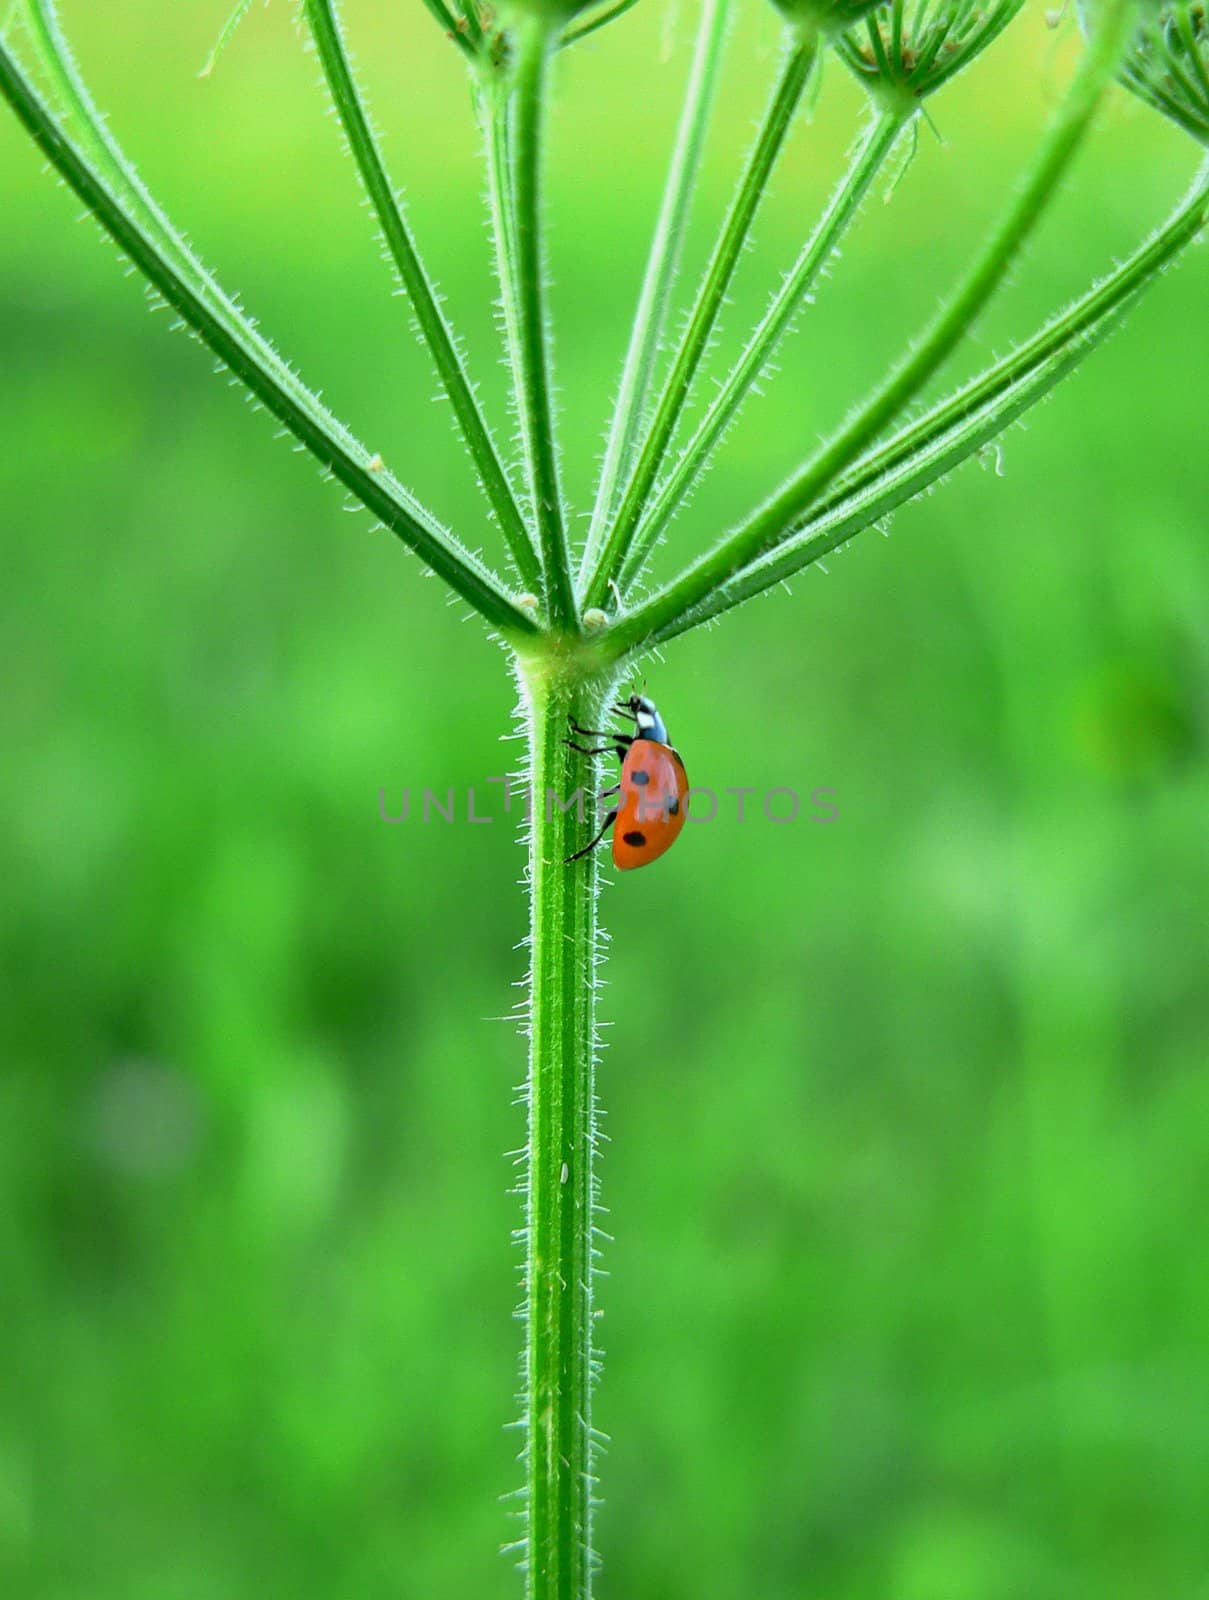 Ladybug by Teamarbeit